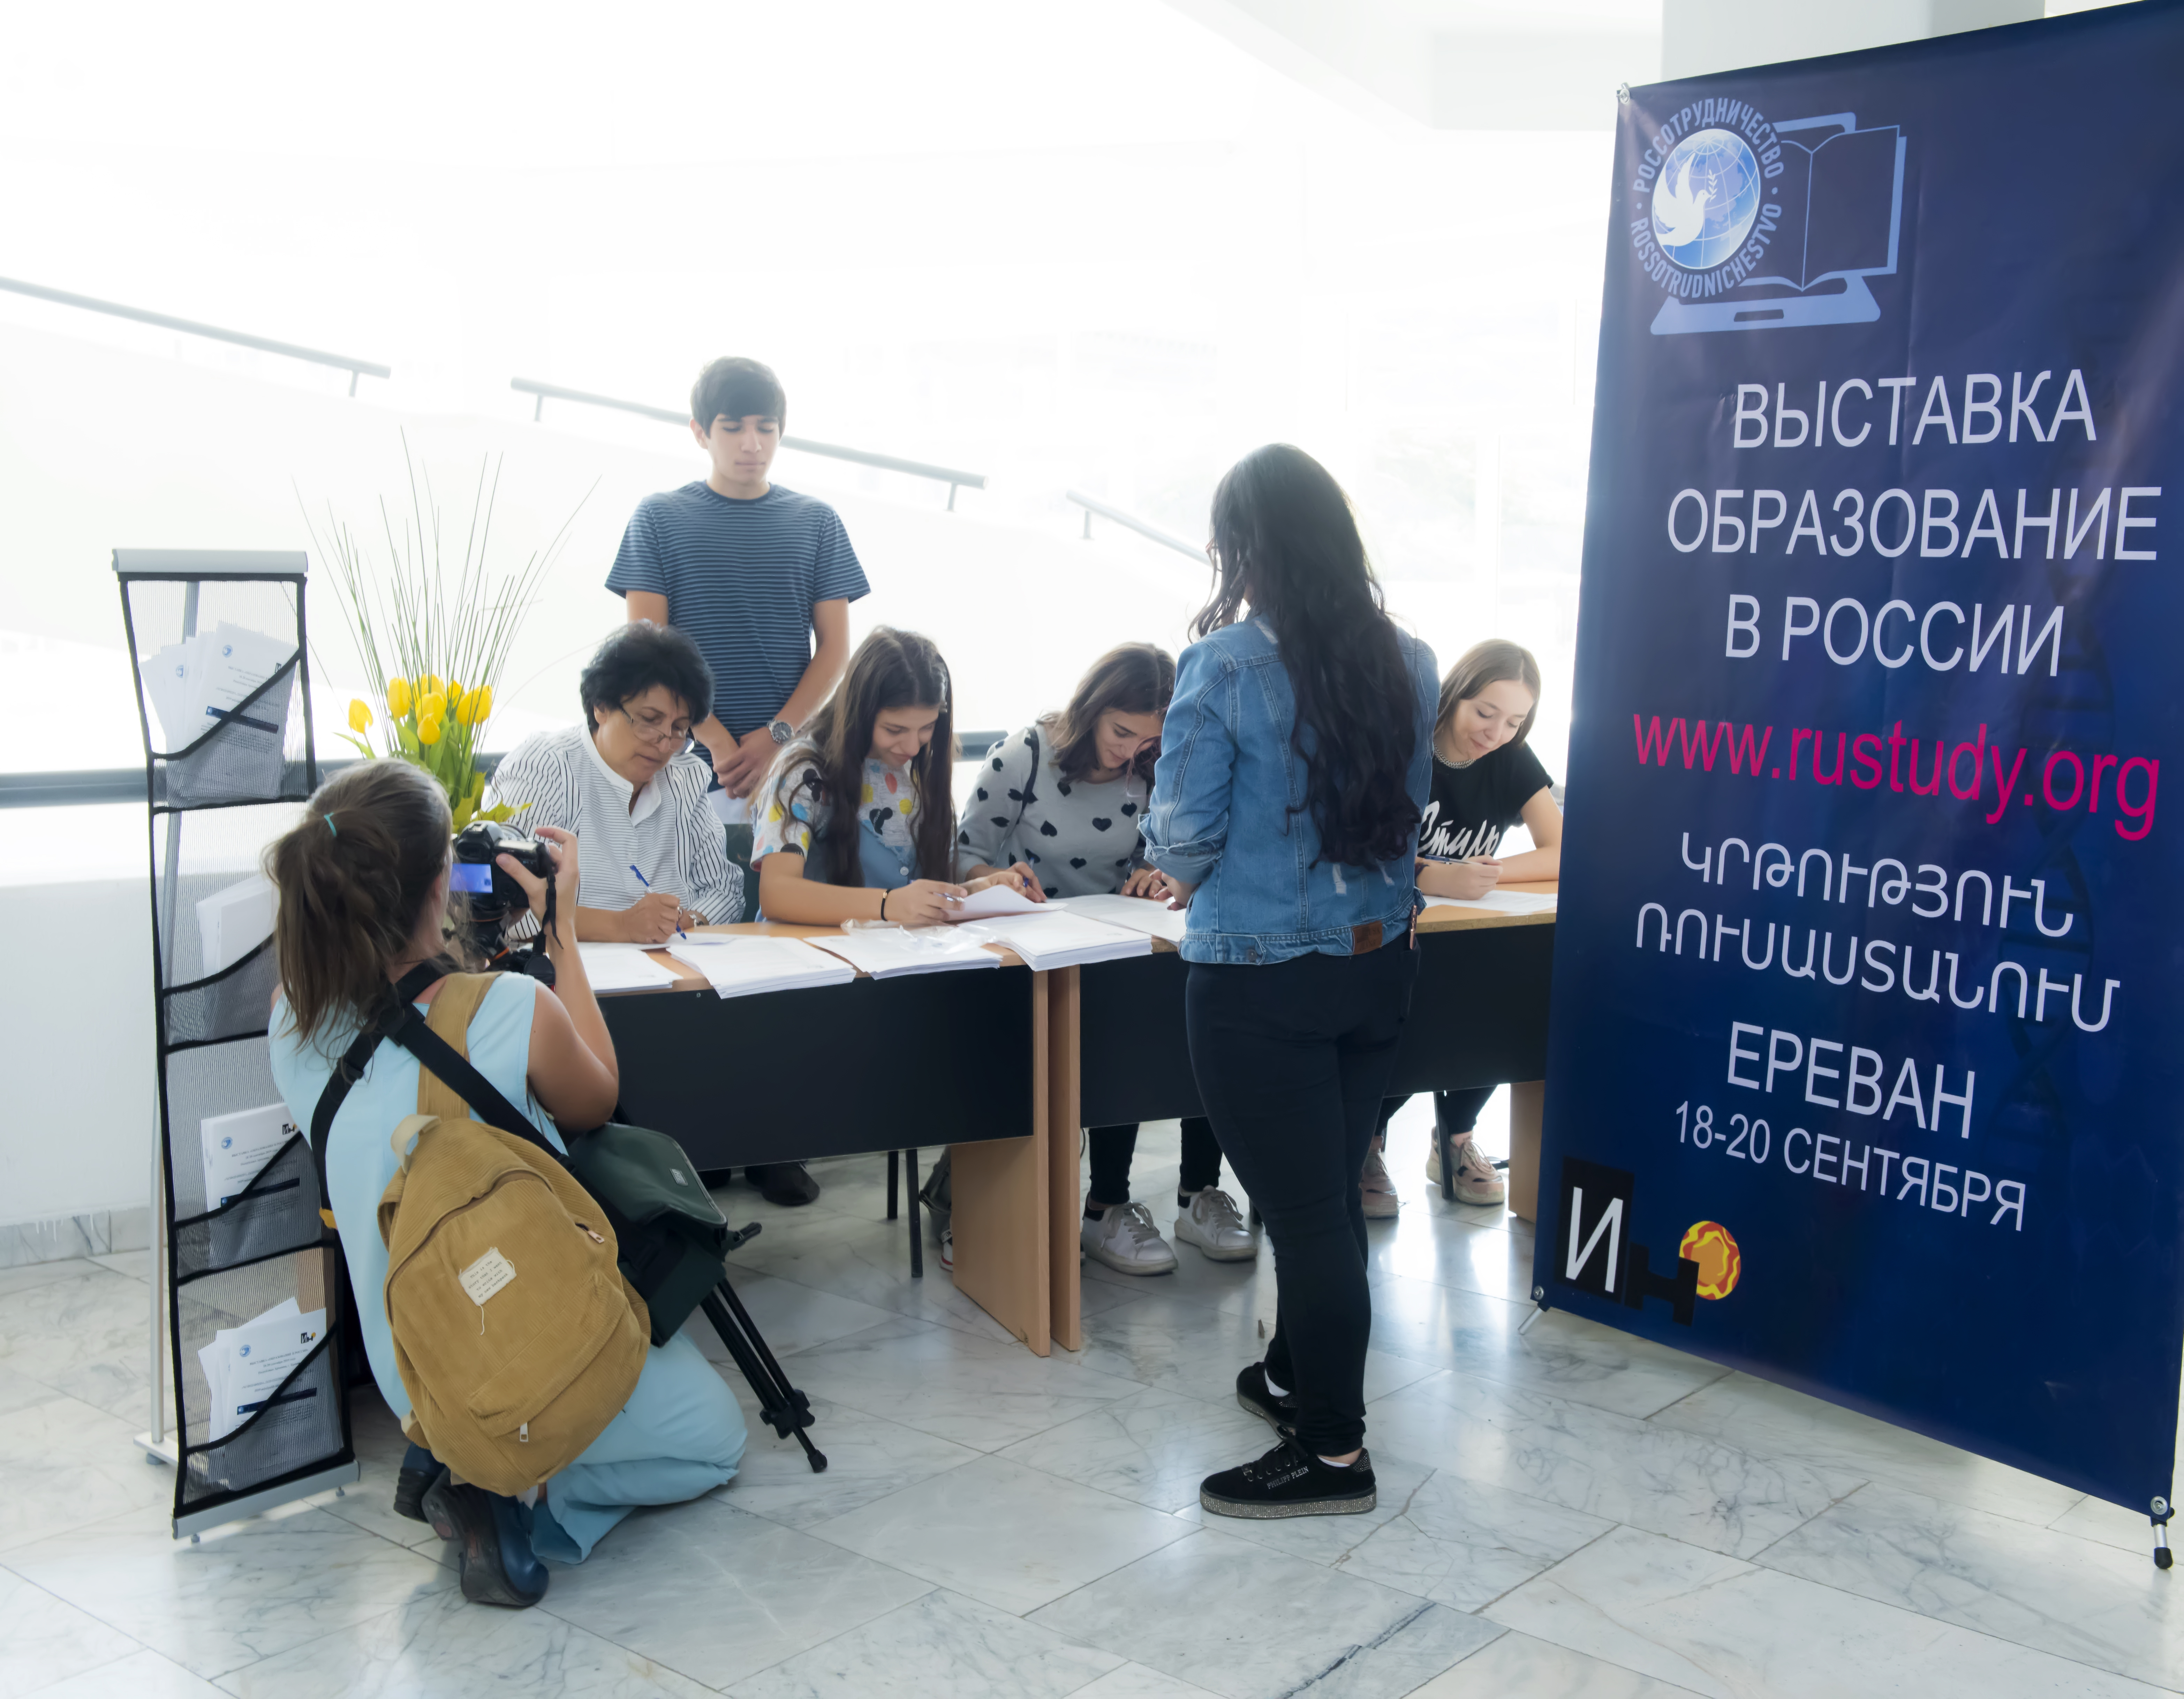 Интерес к российскому образованию: в Ереване завершилась выставка «Образование в России» 